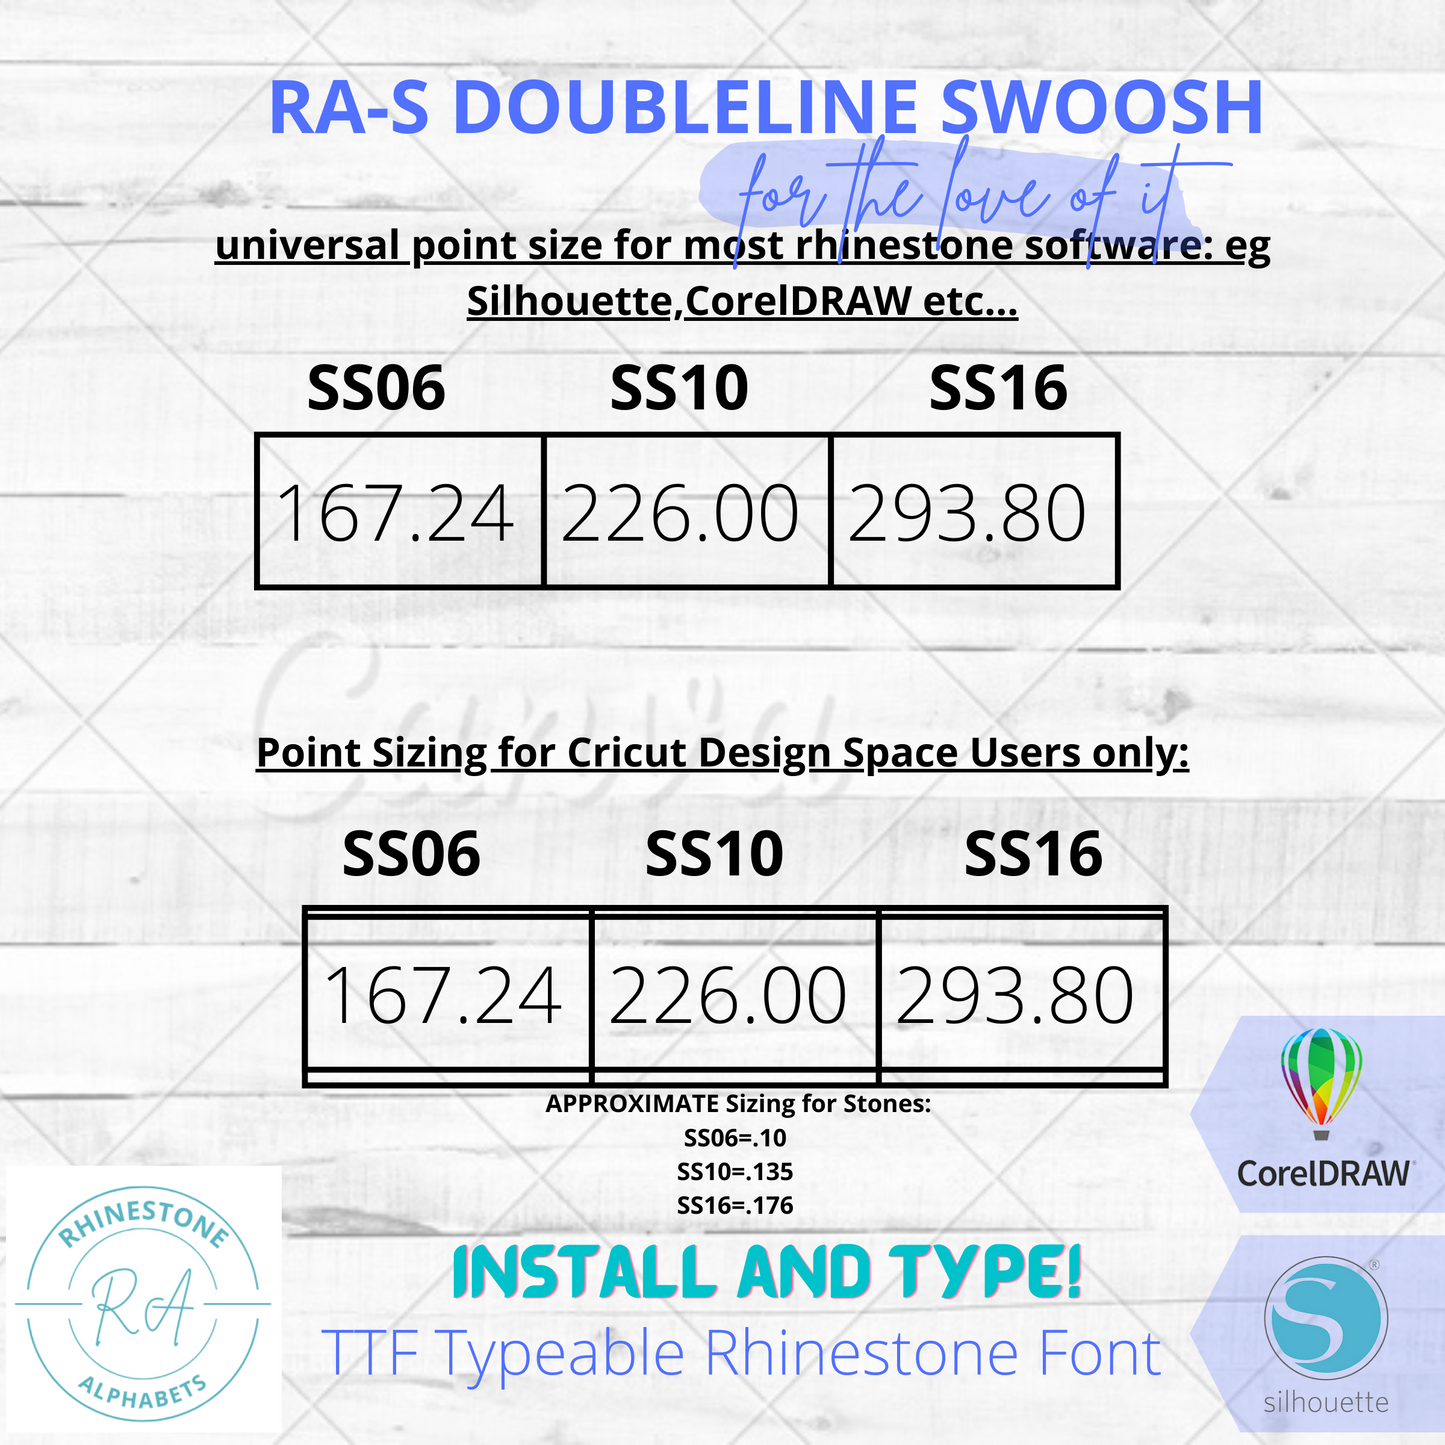 RA-S Doubleline Swoosh- A Ttf True Type Rhinestone Font!